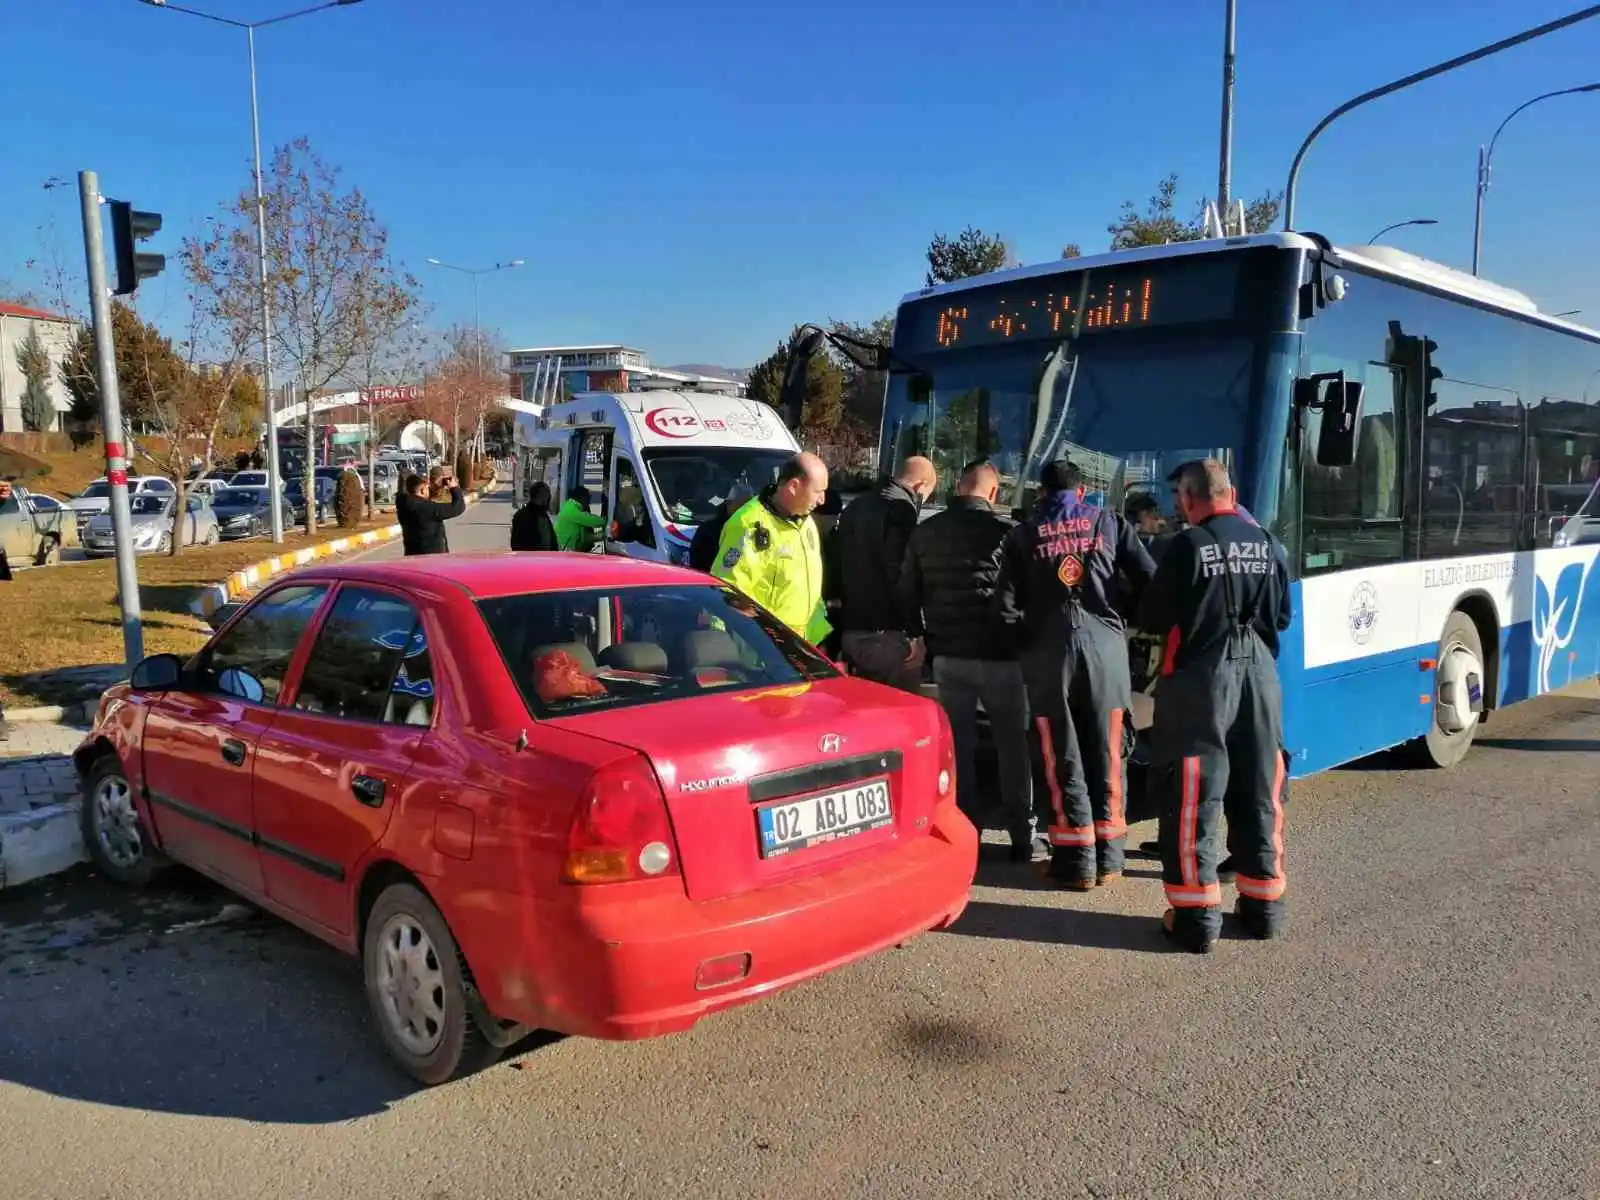 Elazığ’da otobüs ile otomobil çarpıştı: 4 yaralı
